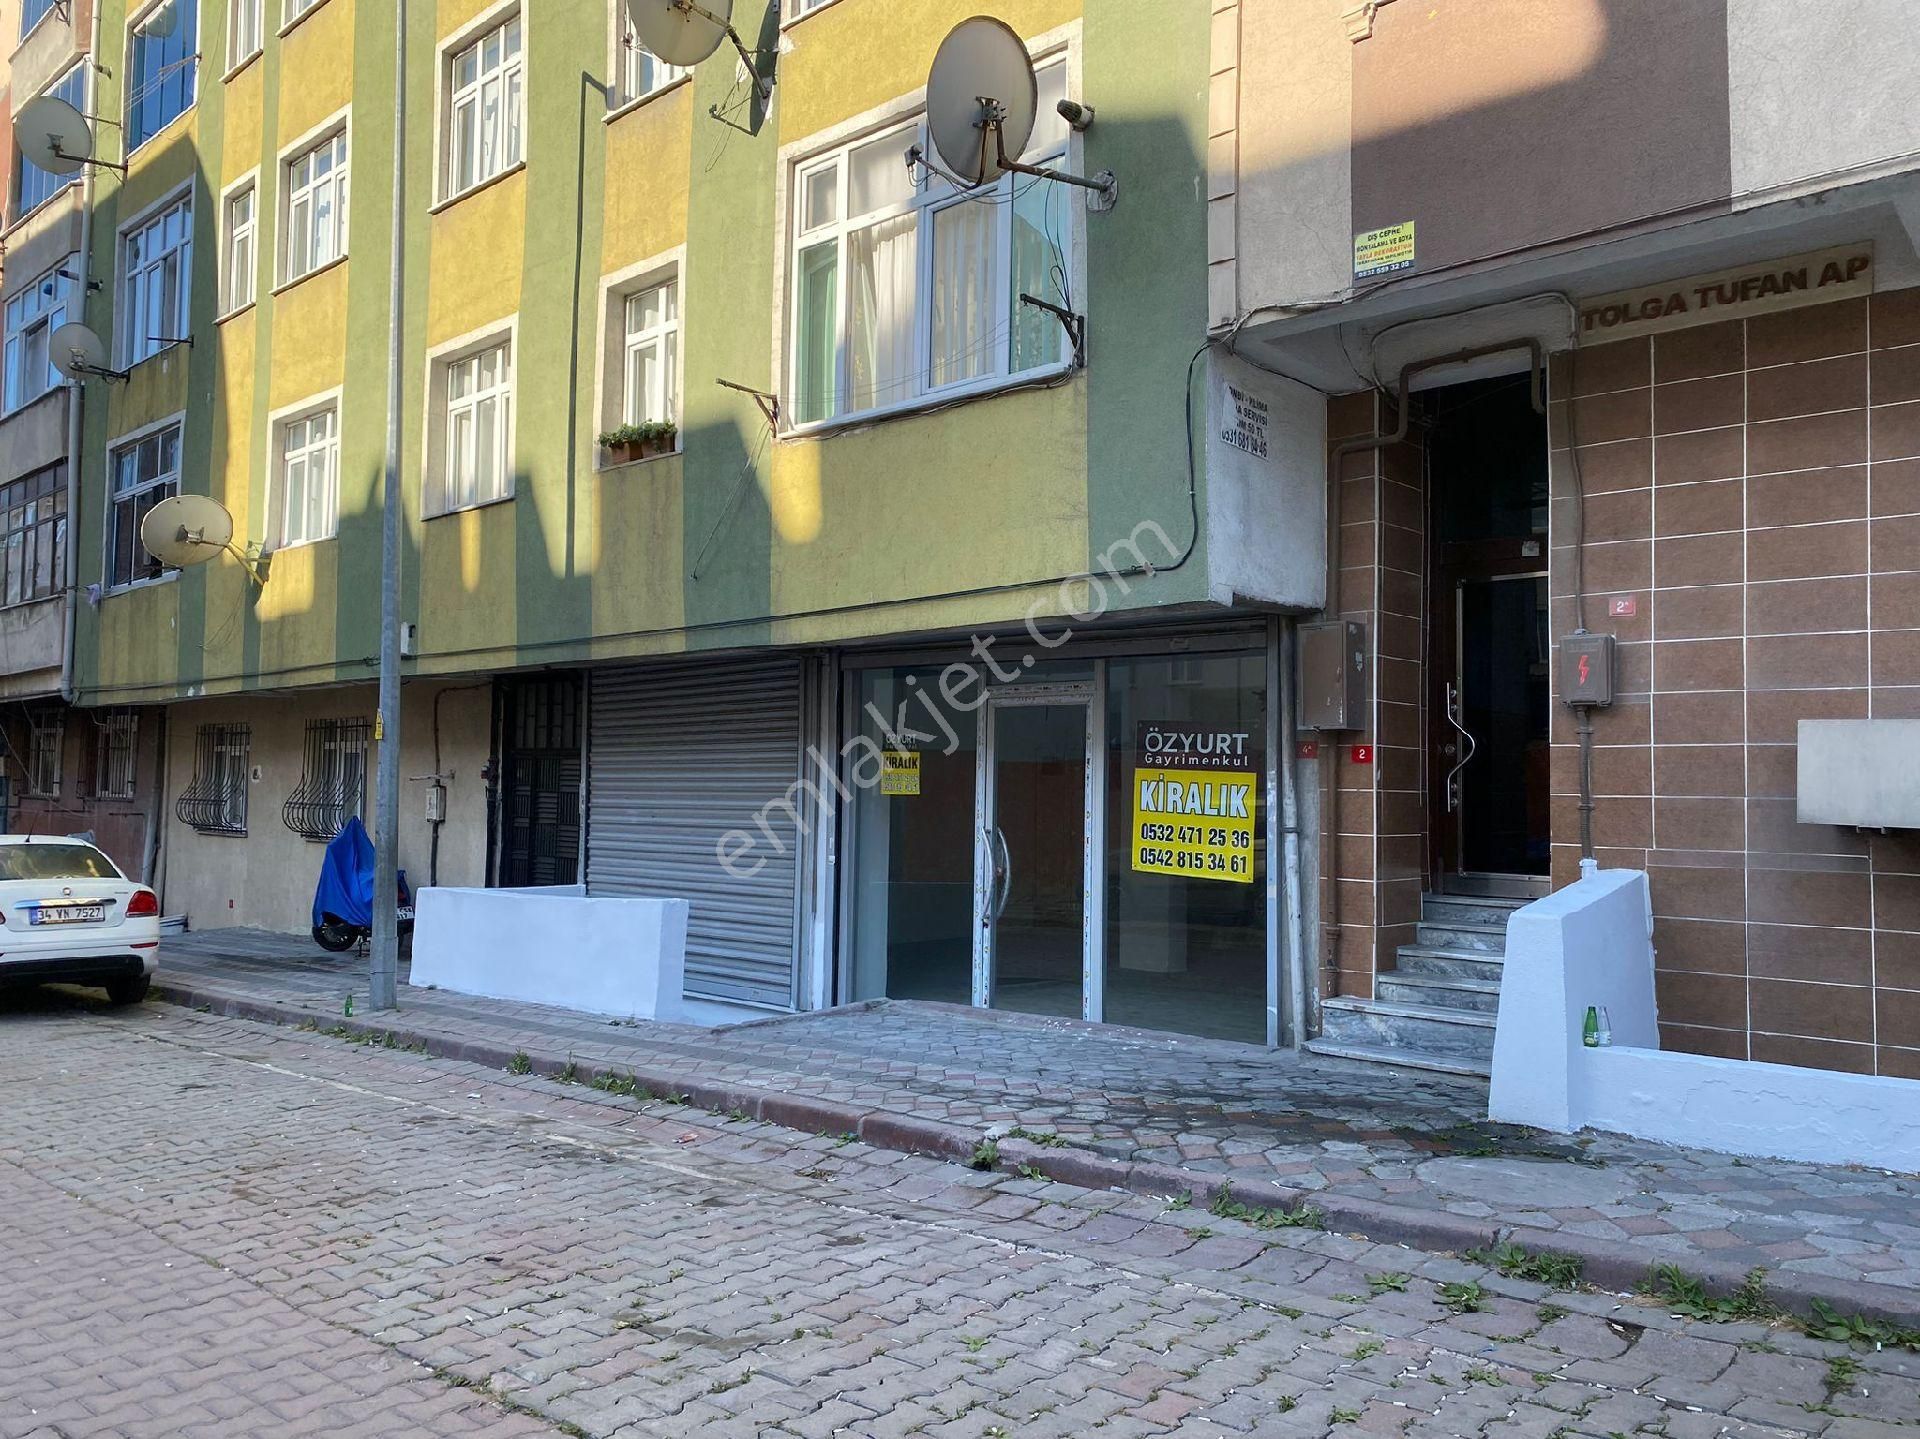 İstanbul Sultangazi Kiralık Dükkan & Mağaza İçi Tadilati Yapılmış Kiralık İş yeri 